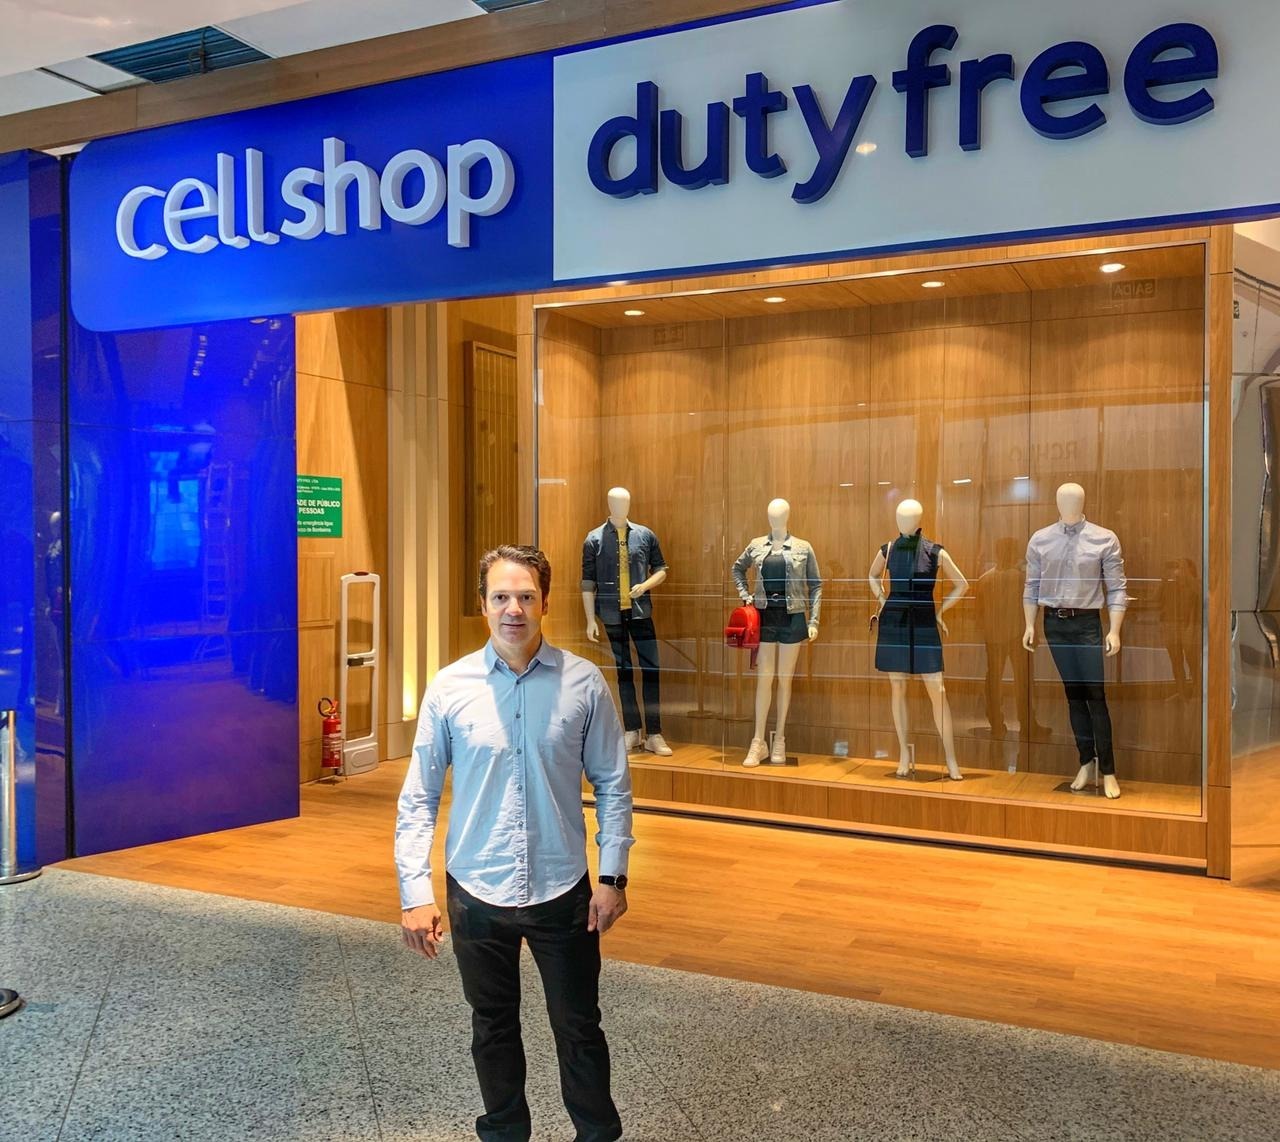 Cellshop Duty Free abre loja no Shopping Catuaí Palladium em Foz do Iguaçu Uma das maiores lojas de departamentos no Paraguai, a Cellshop Importados, referência internacional em produtos, vai inaugurar uma loja duty free no Shopping Catuaí Palladium na próxima quinta-feira, 8, em Foz do Iguaçu